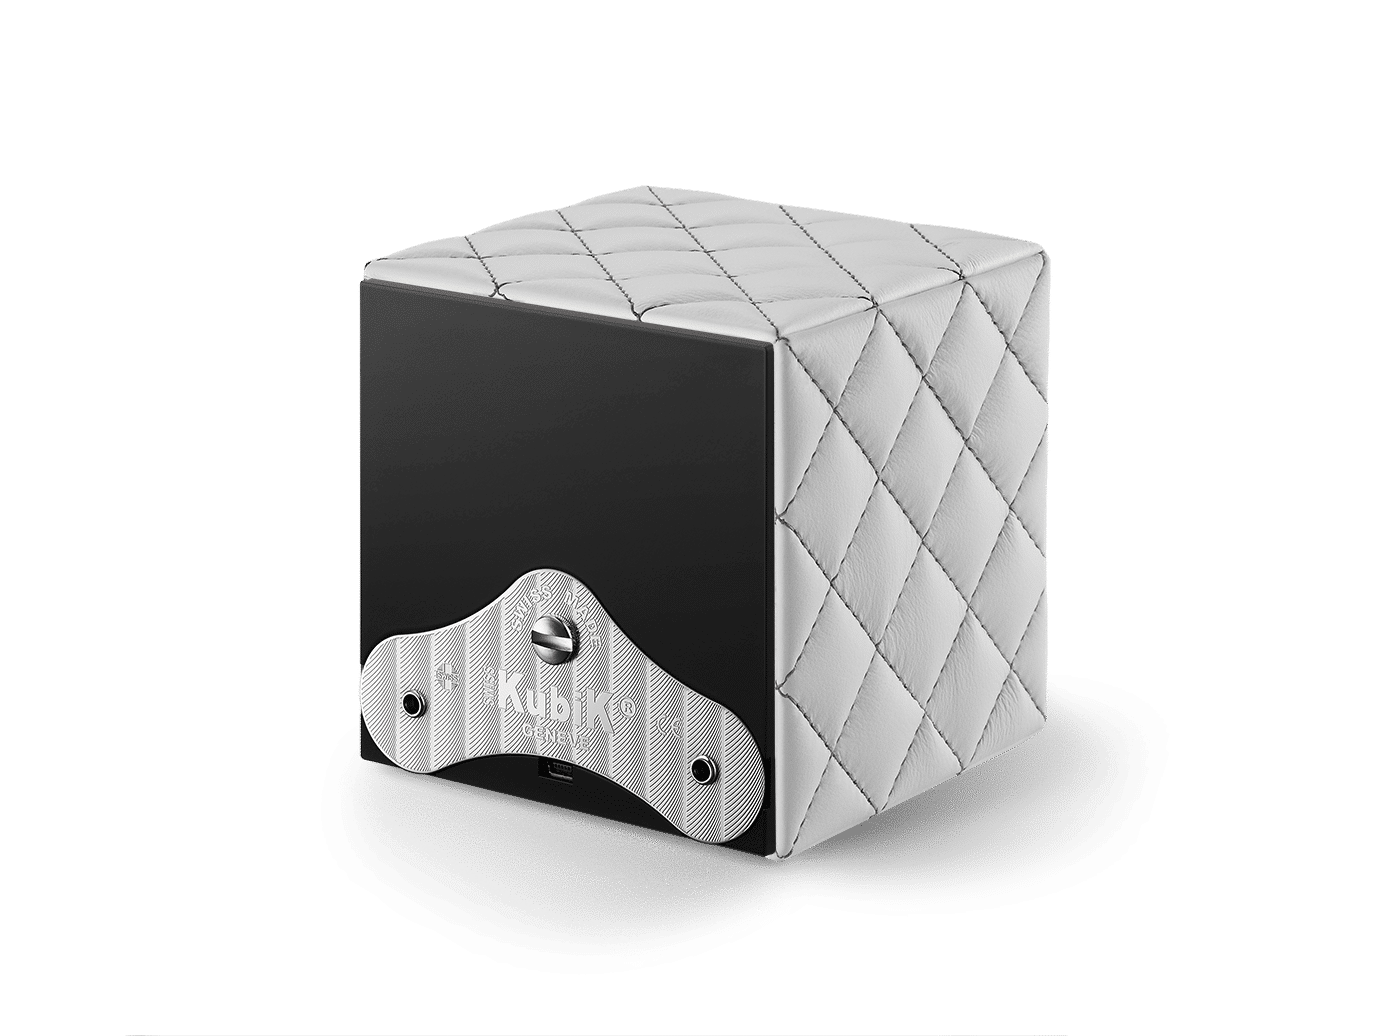 Masterbox Cuir blanc mat surpiqûres grises Masterbox Référence :  SK01.CV.COUTURE. BLANC MAT C/GRIS -2